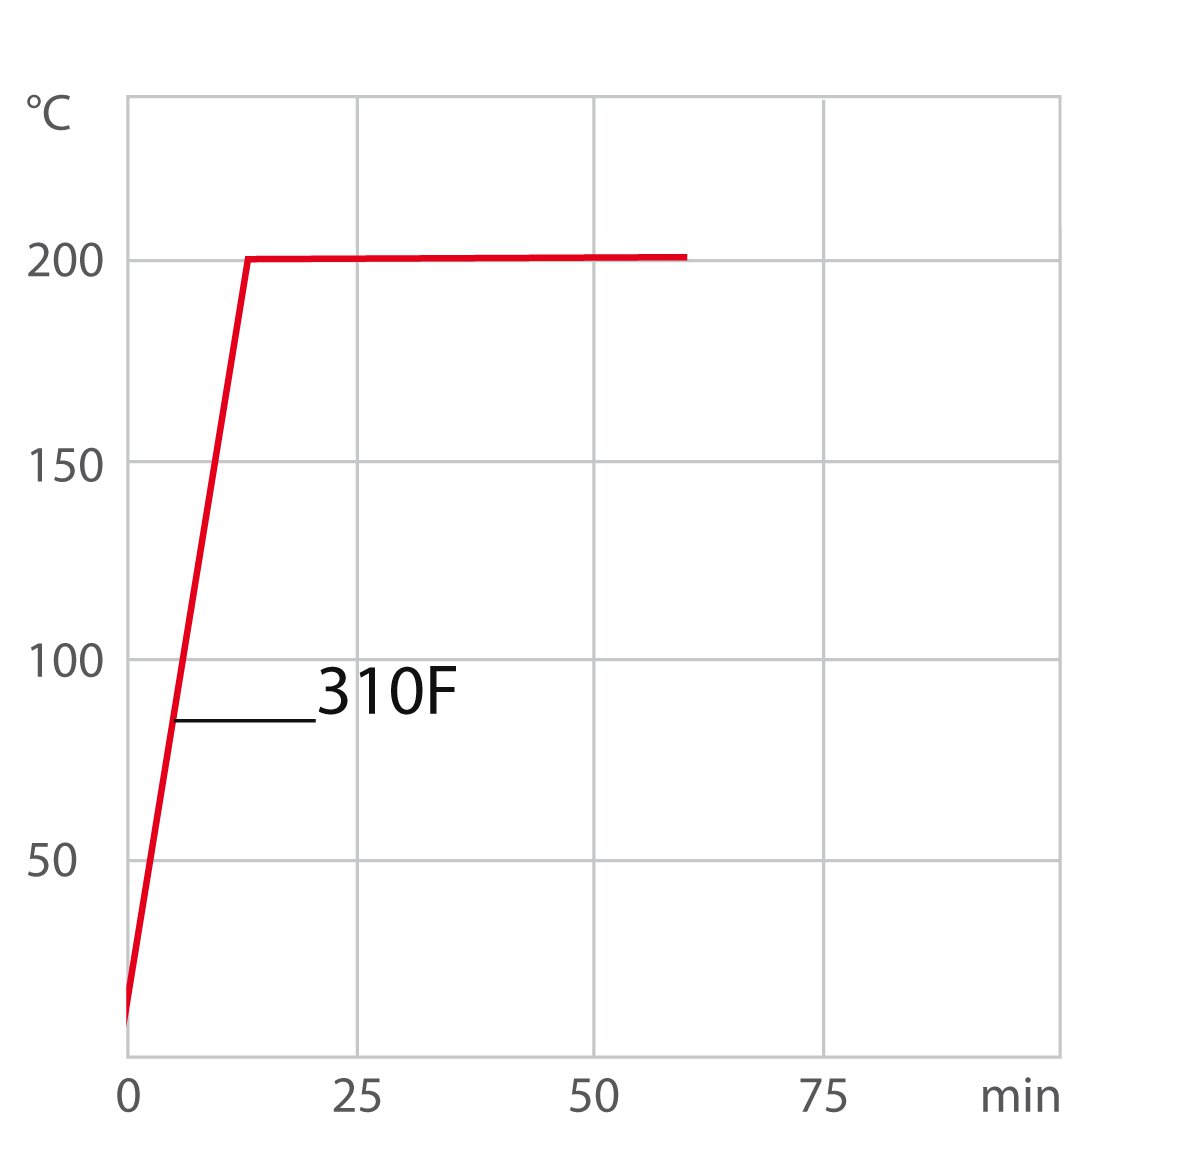 Curva de calefacción para criotstato de circulación / termostato de laboratorio 310F